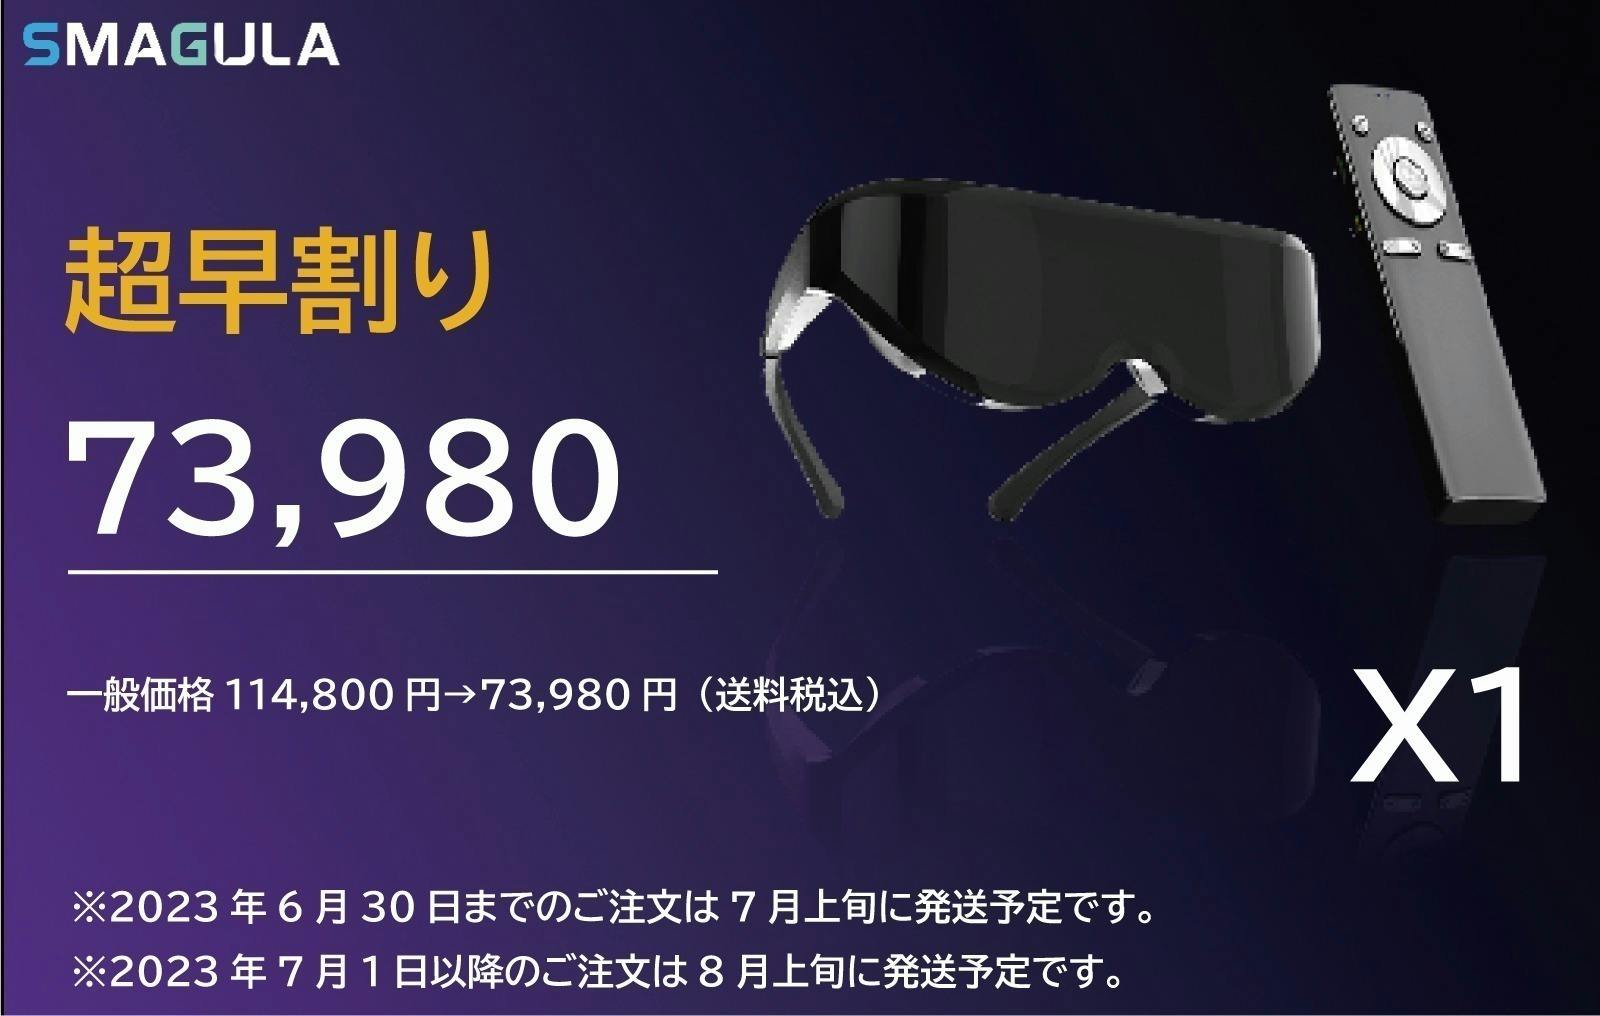 VR ヘッドマウントディスプレイ「SMAGULA」3Dスマートコンプリートセット - テレビ/映像機器